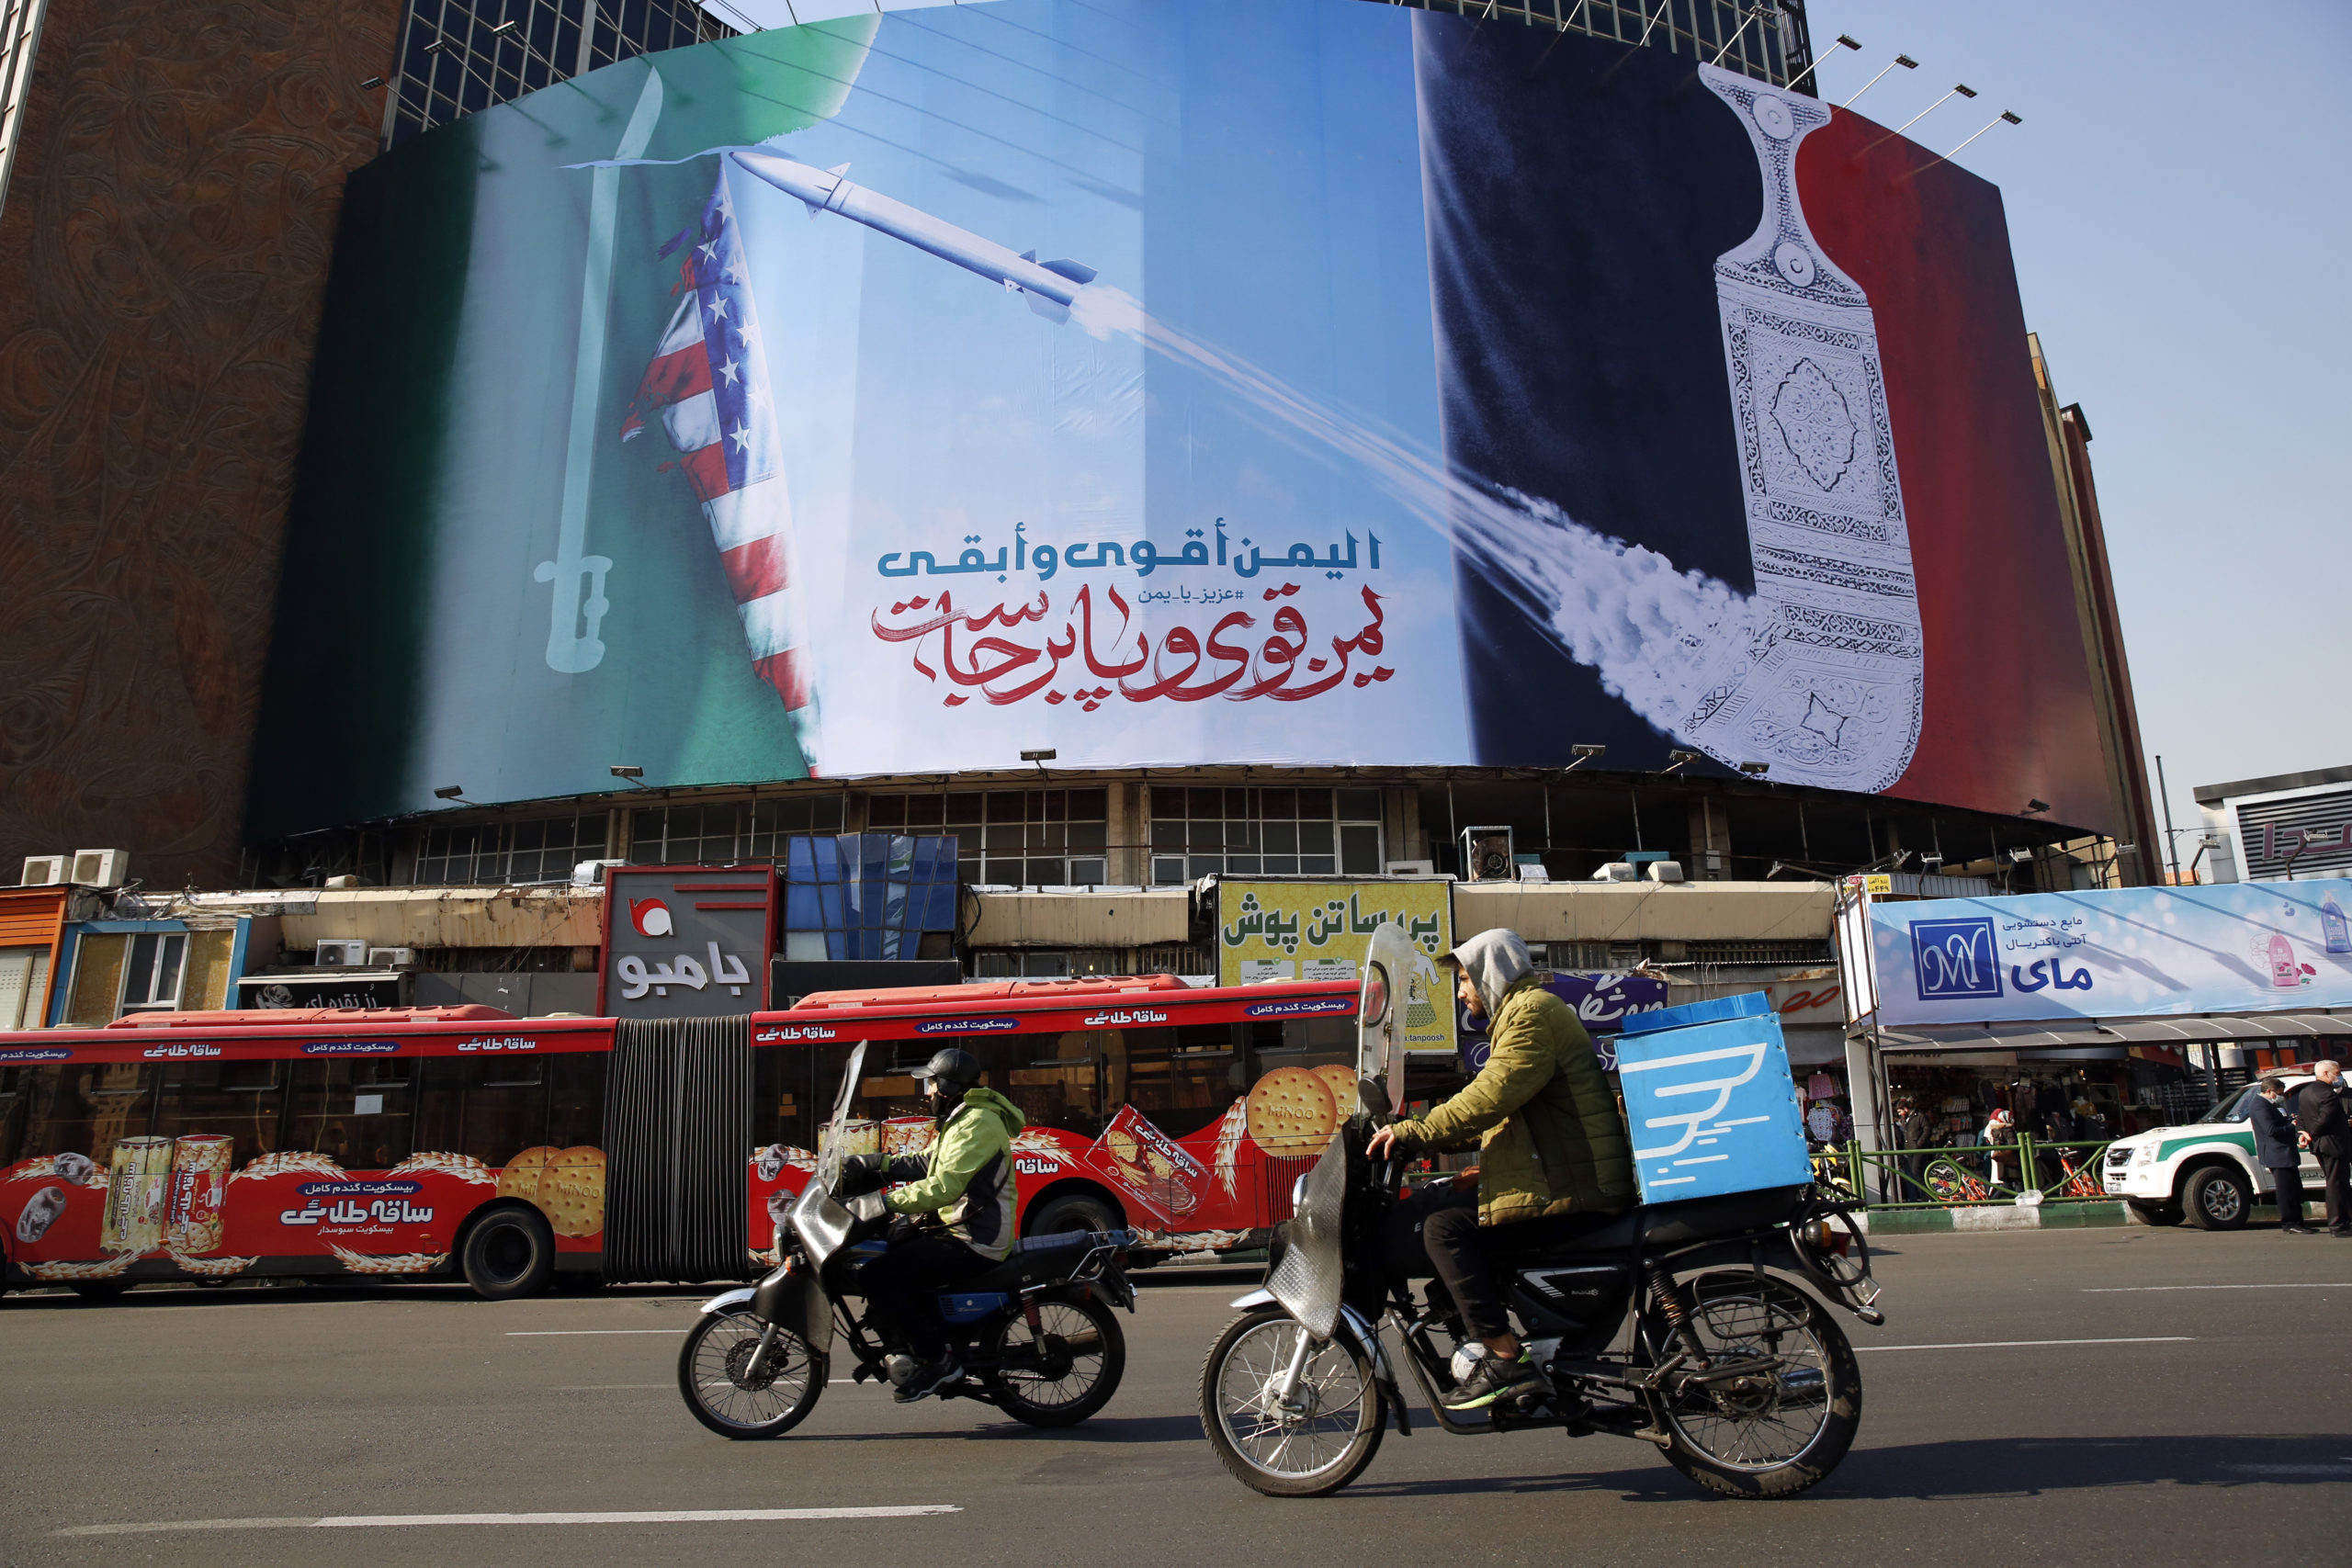 »Jemen on vahva ja vakaa», julistettiin alkuvuodesta Teheranin katukuvassa.